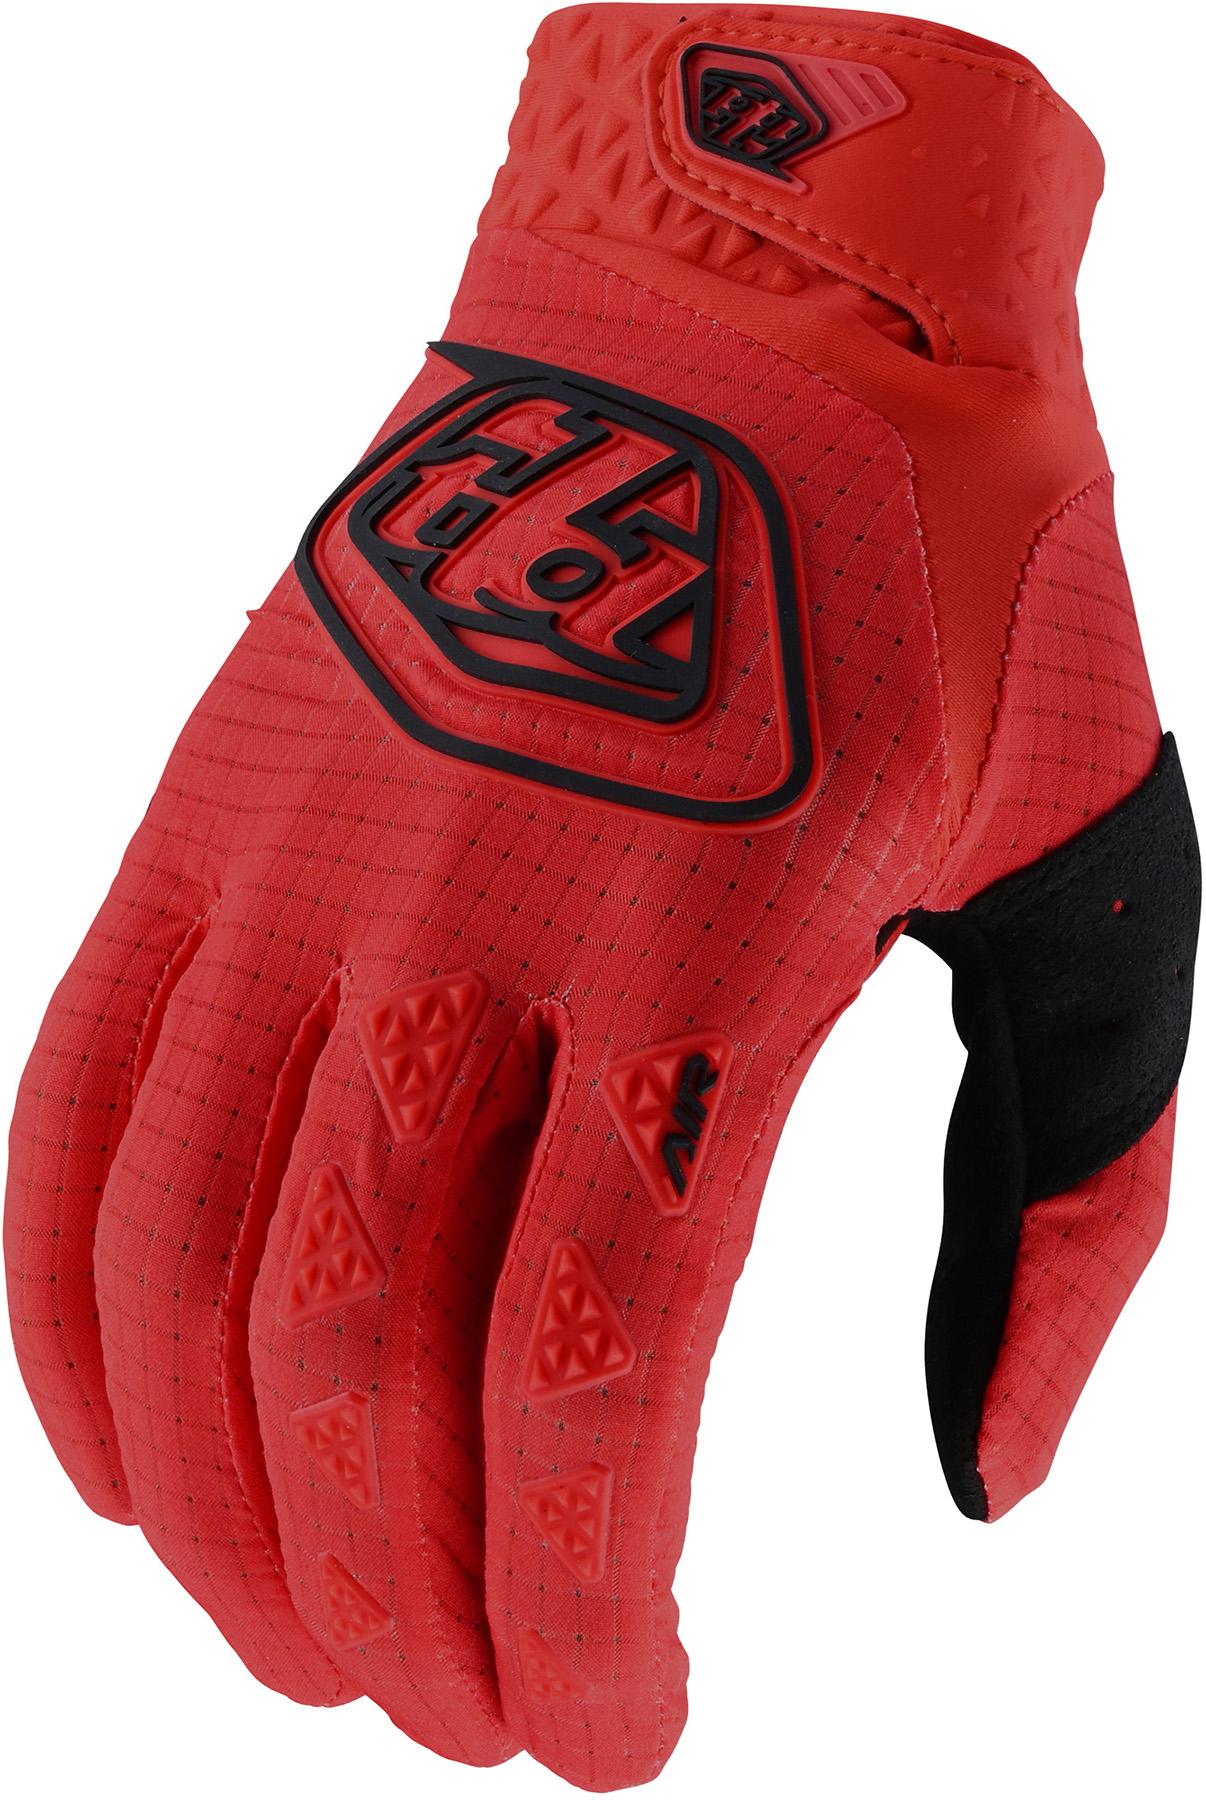 Troy Lee Designs Air Gloves - Red